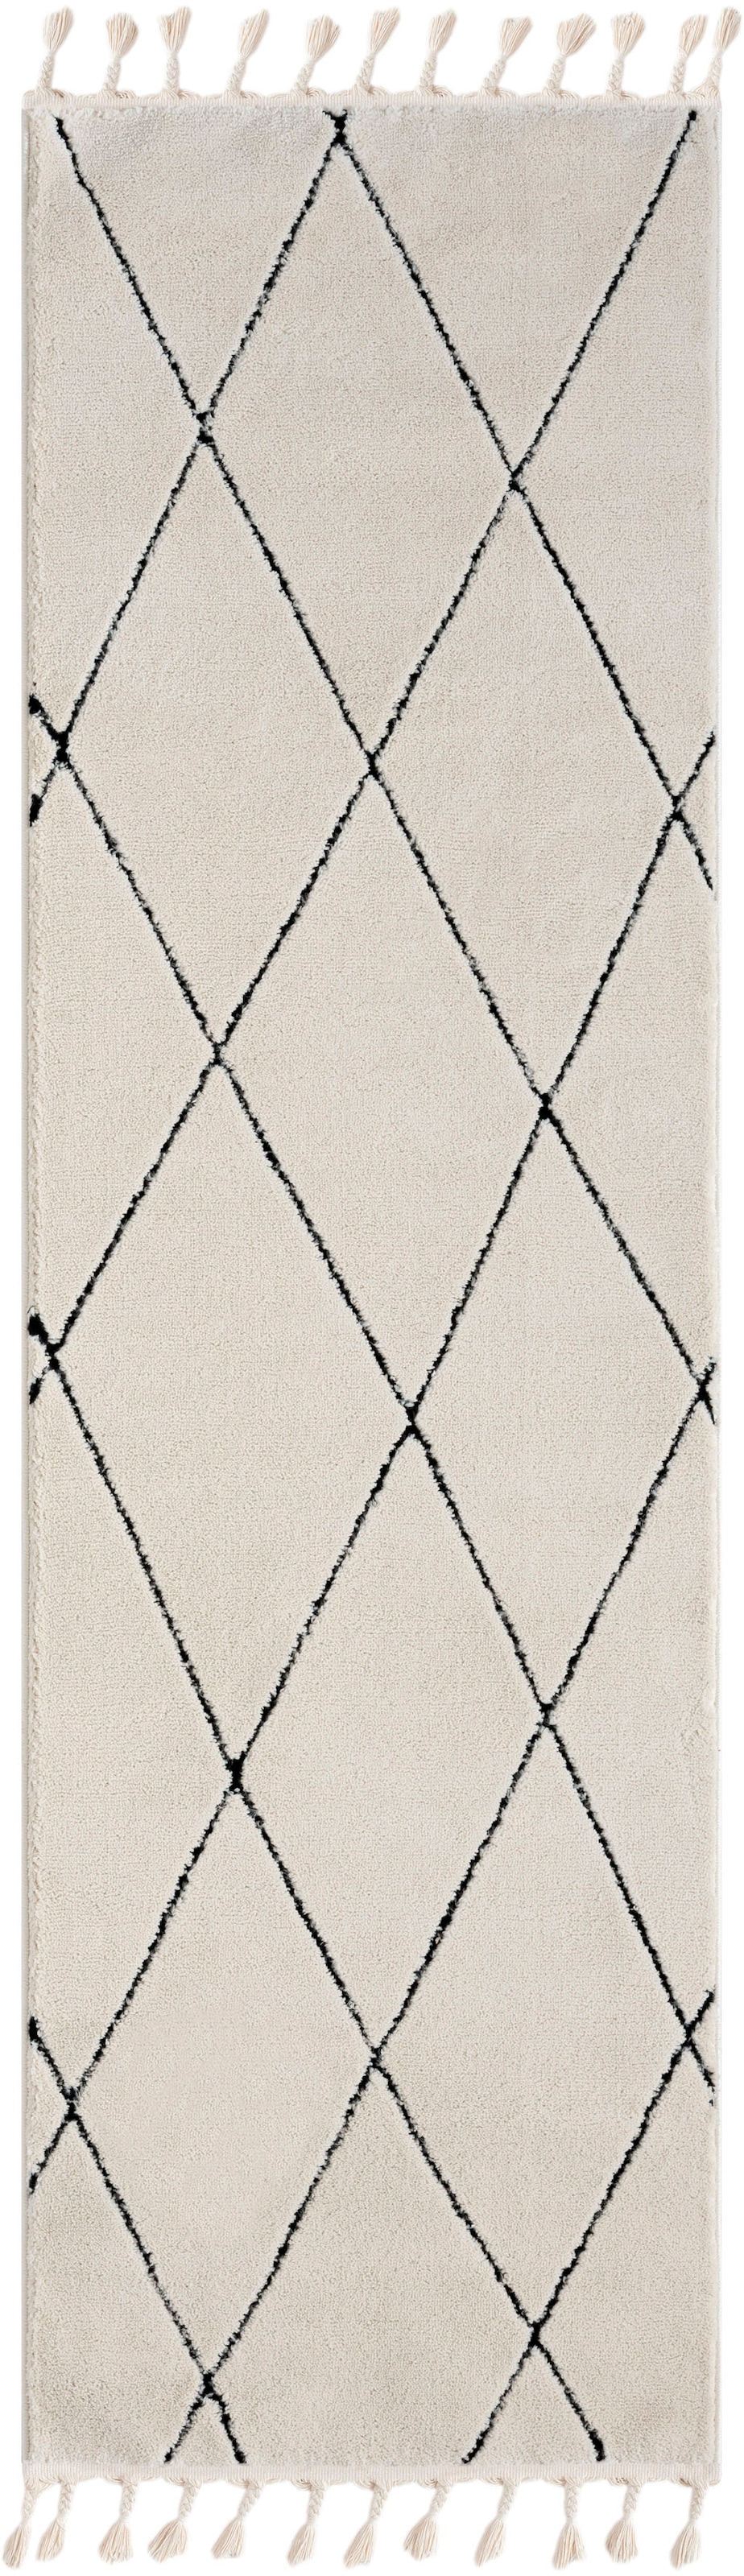 Myflair Möbel & Accessoires Hochflor-Läufer »Moroccan Pattern«, rechteckig, modern, marokkanisches Design, Rauten Muster, weich, mit Fransen